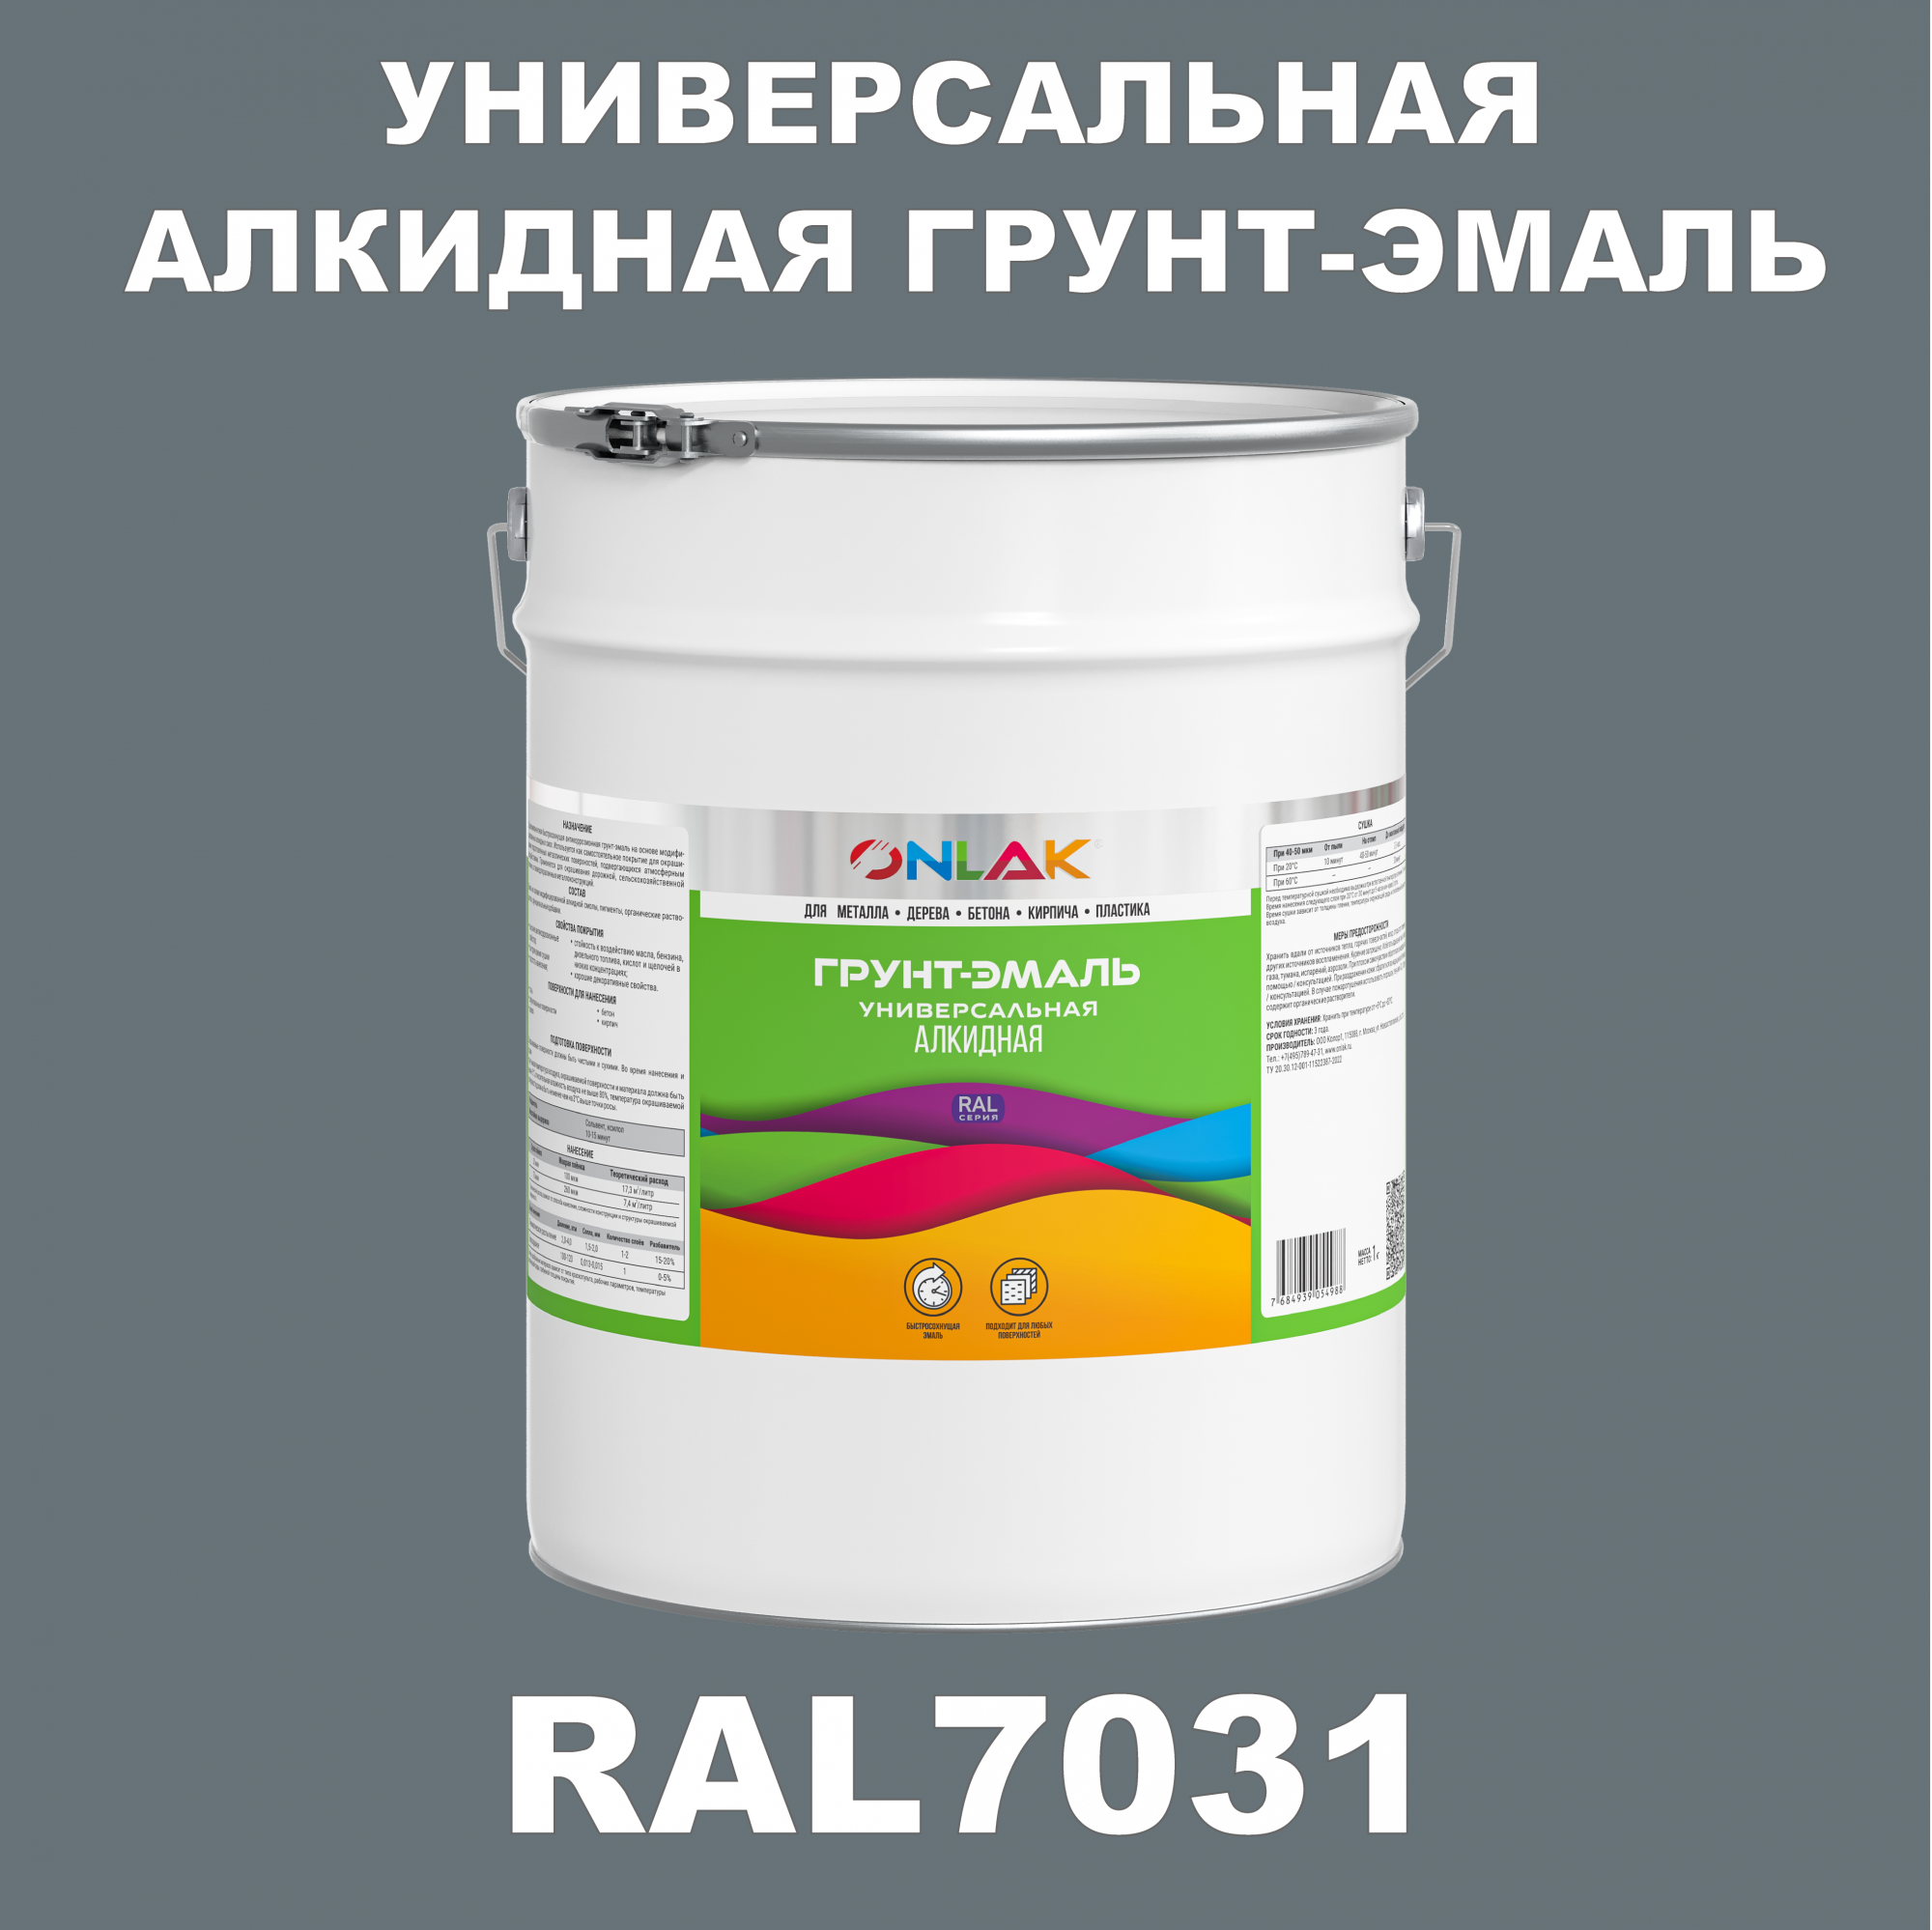 Грунт-эмаль ONLAK 1К RAL7031 антикоррозионная алкидная по металлу по ржавчине 20 кг грунт эмаль yollo по ржавчине алкидная зеленая 0 9 кг